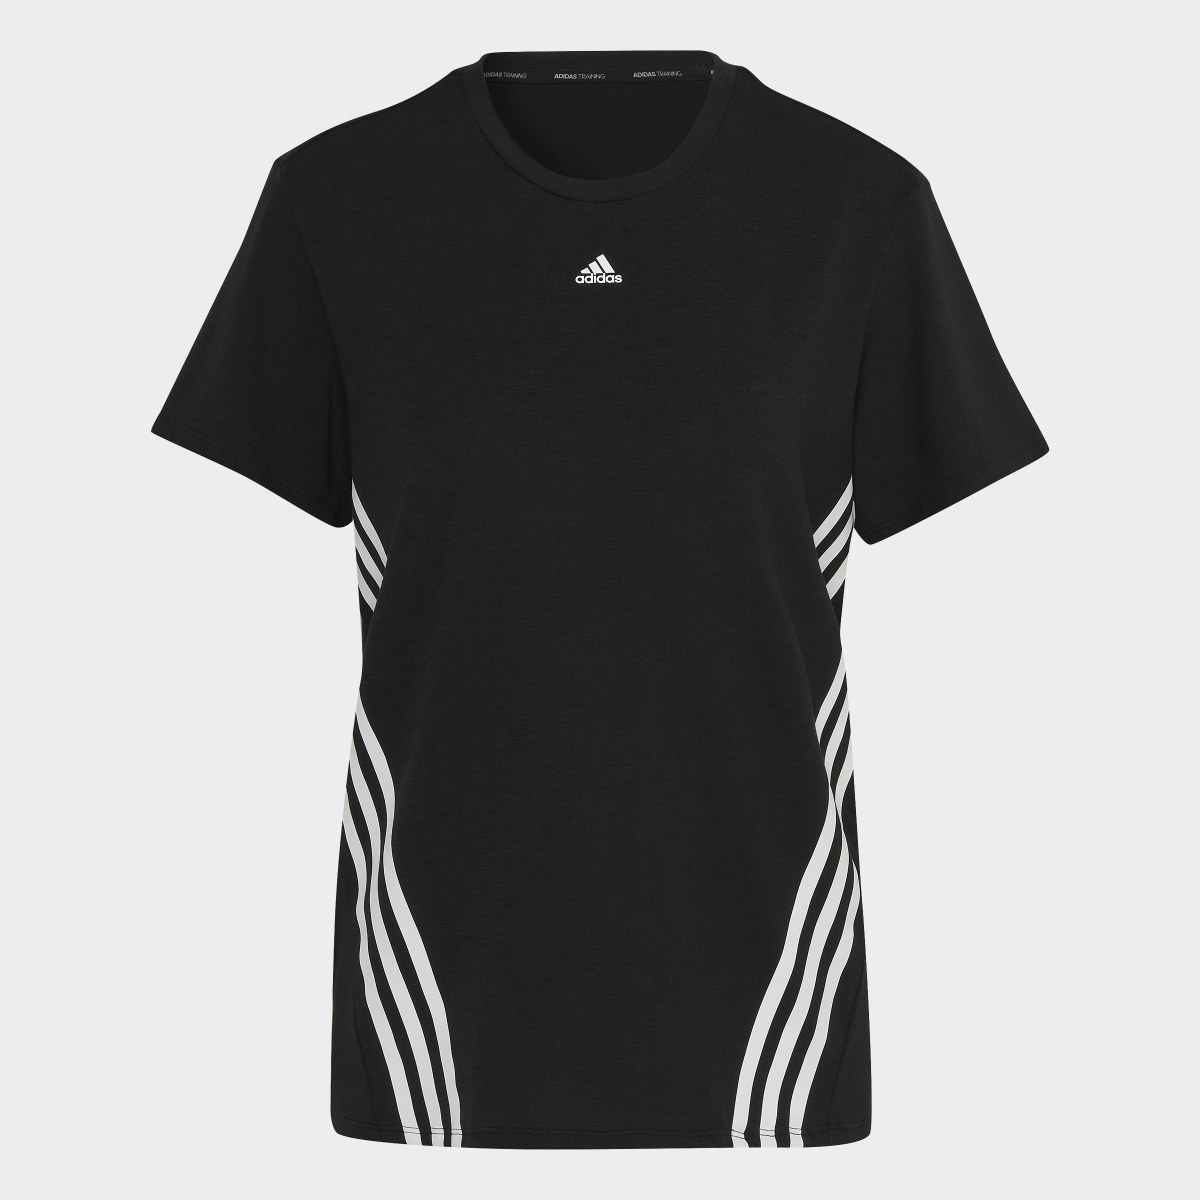 Adidas T-shirt Trainicons 3-Stripes. 6